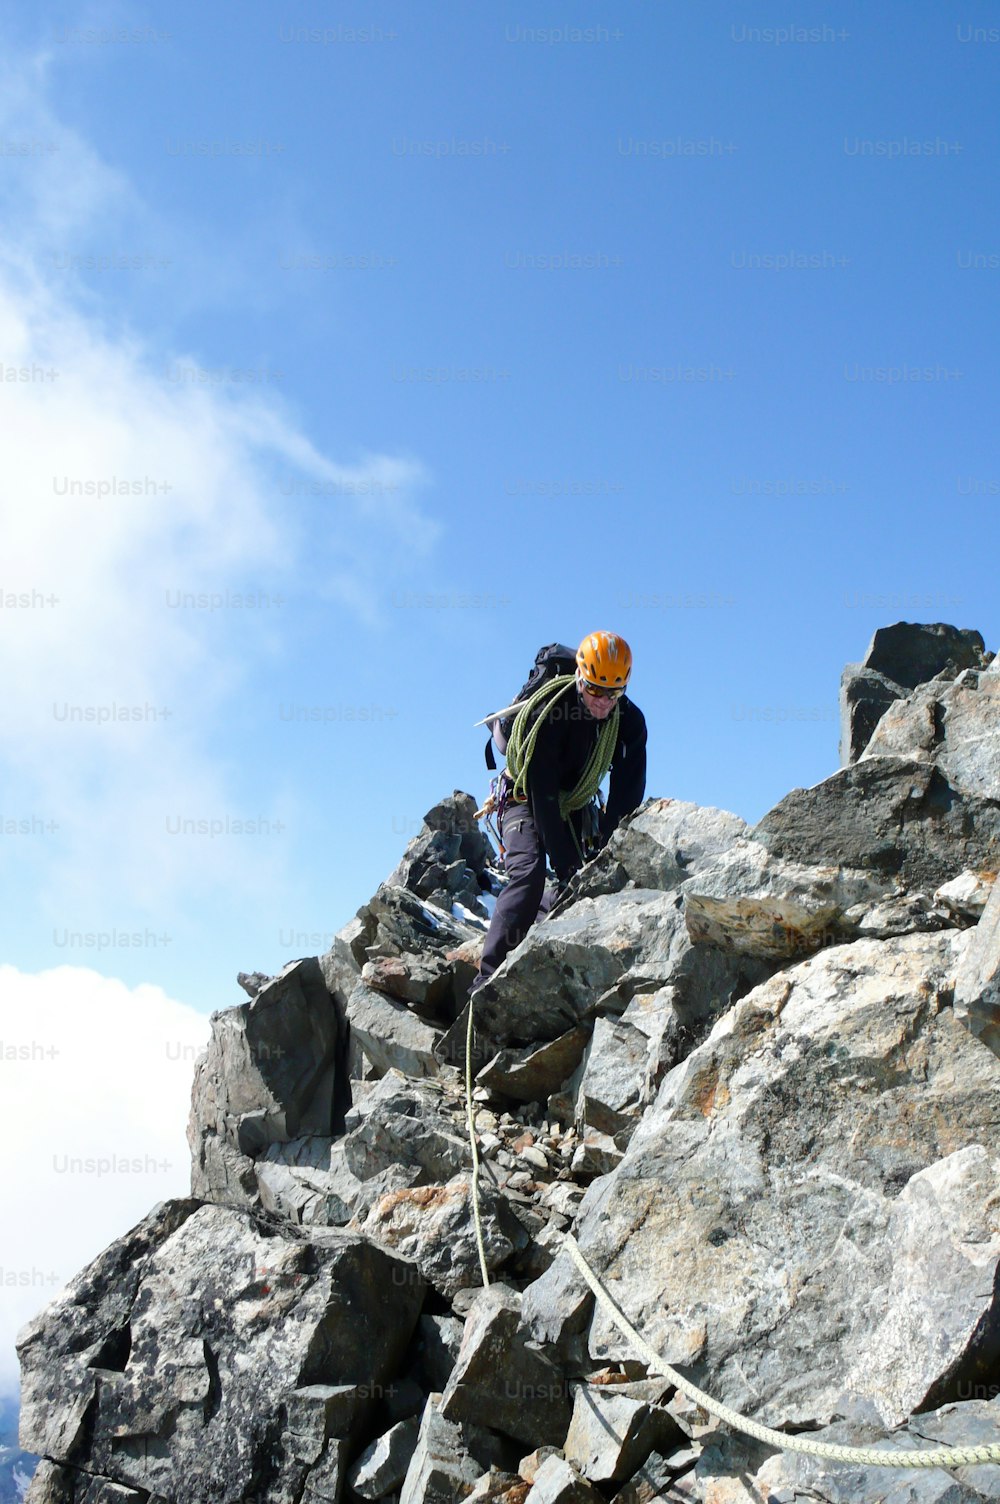 Bergführer auf einem steilen und exponierten Felsgrat auf dem Weg zu einem hochalpinen Gipfel mit einem Kunden an einem schönen Tag in den Schweizer Alpen